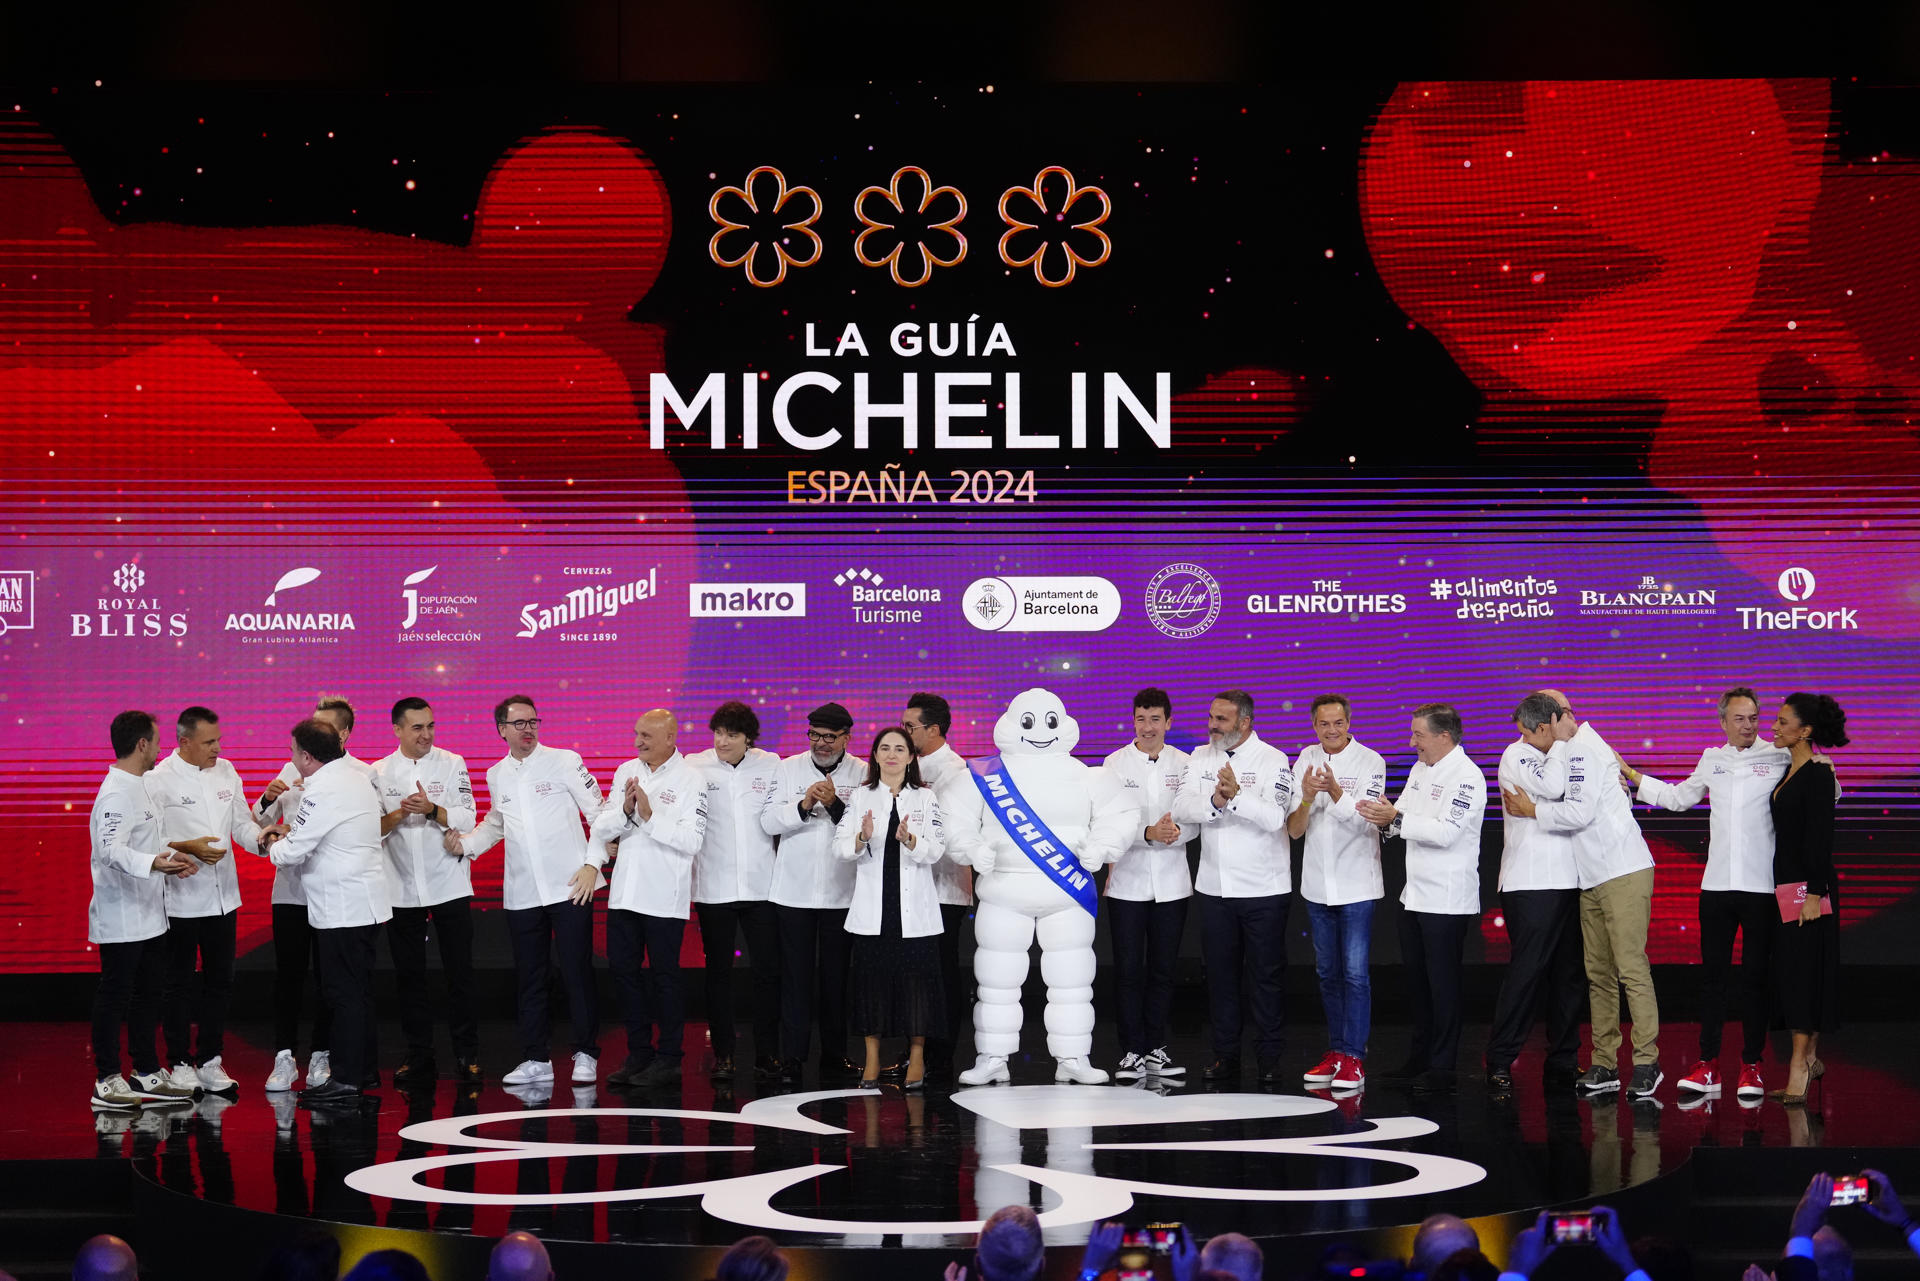 BARCELONA, 28/11/2023.- Foto de familia de los cocineros que han recibido "3 estrellas Michelín" durante la gala de las estrellas Michelin 2024 celebrada este martes en Barcelona. EFE/Enric Fontcuberta